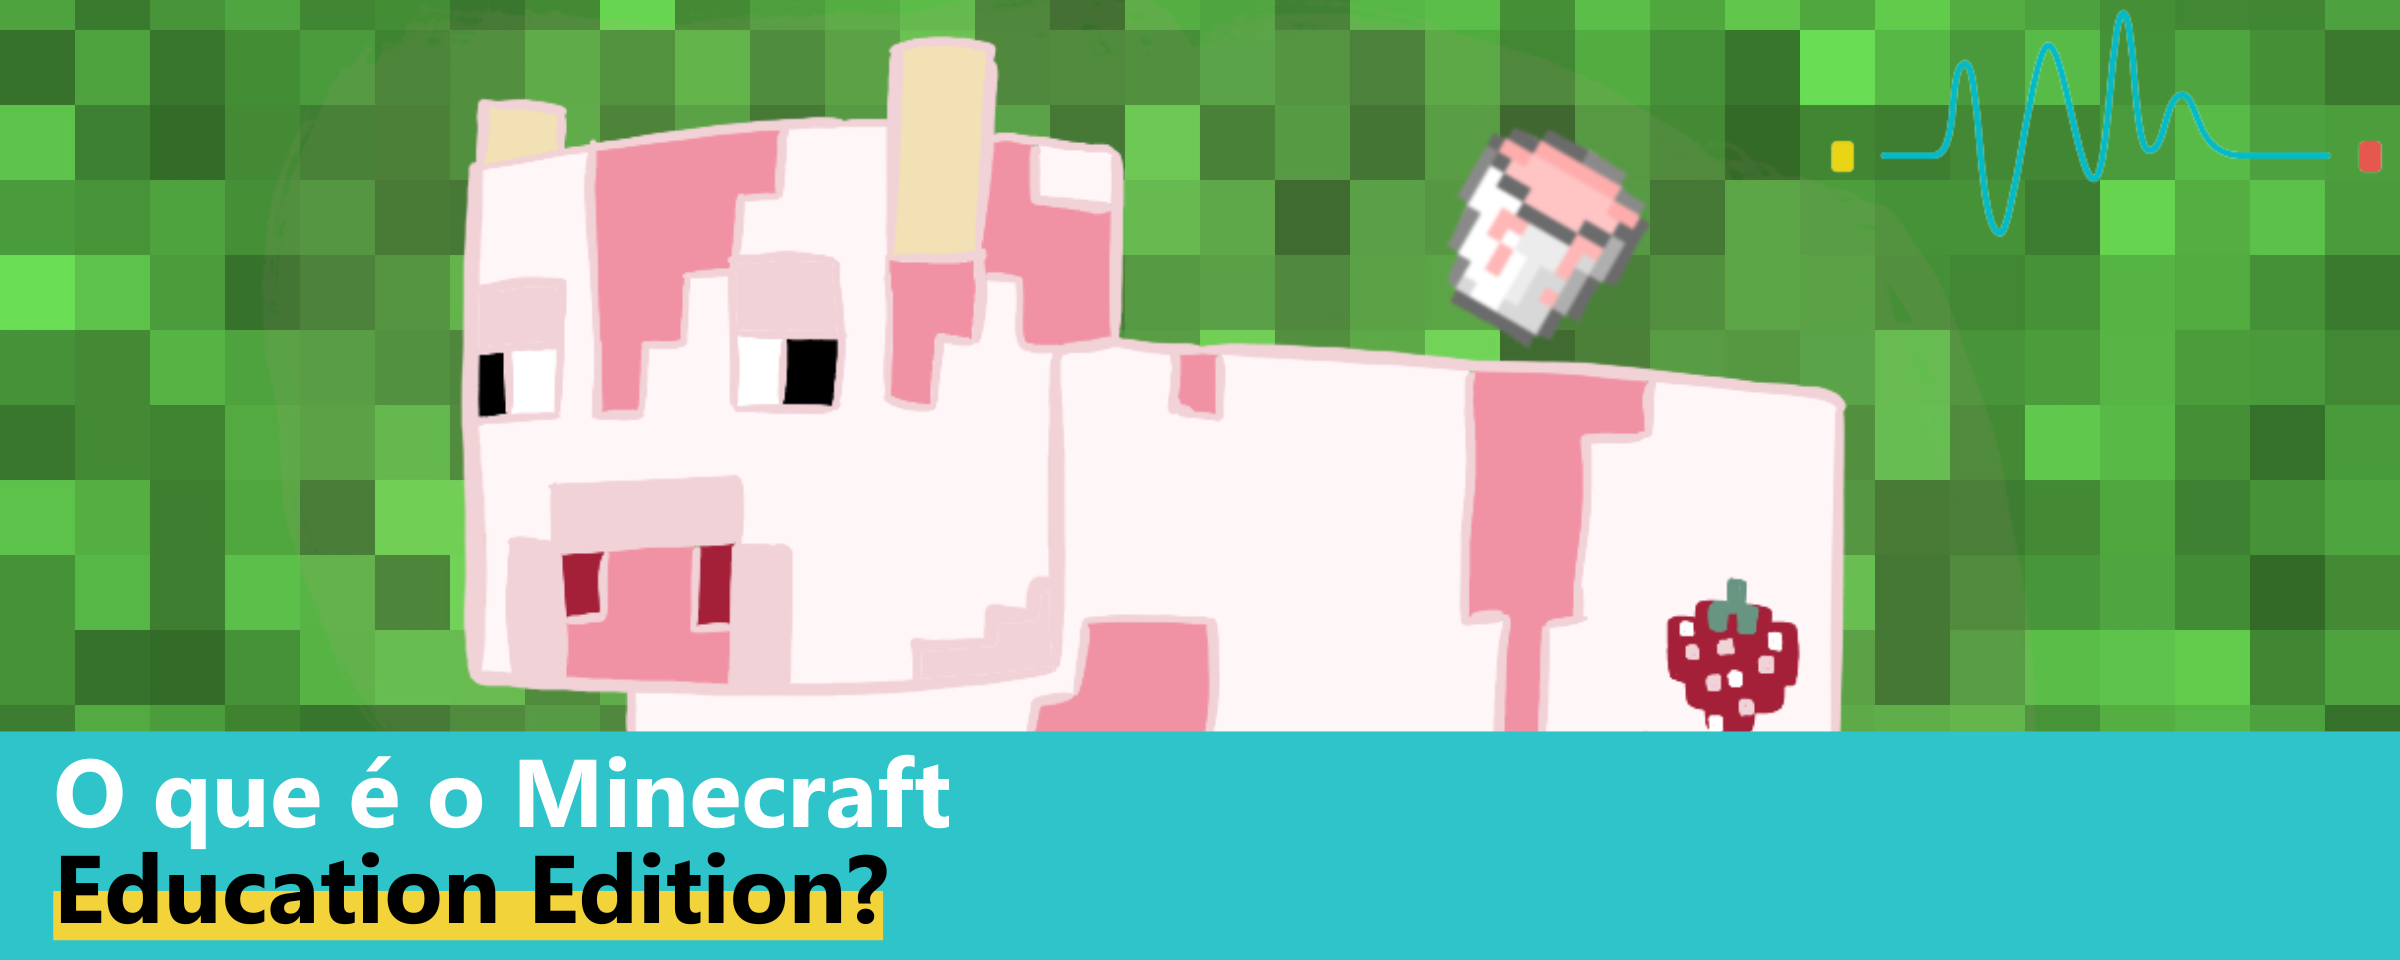 O que é o Minecraft Education Edition